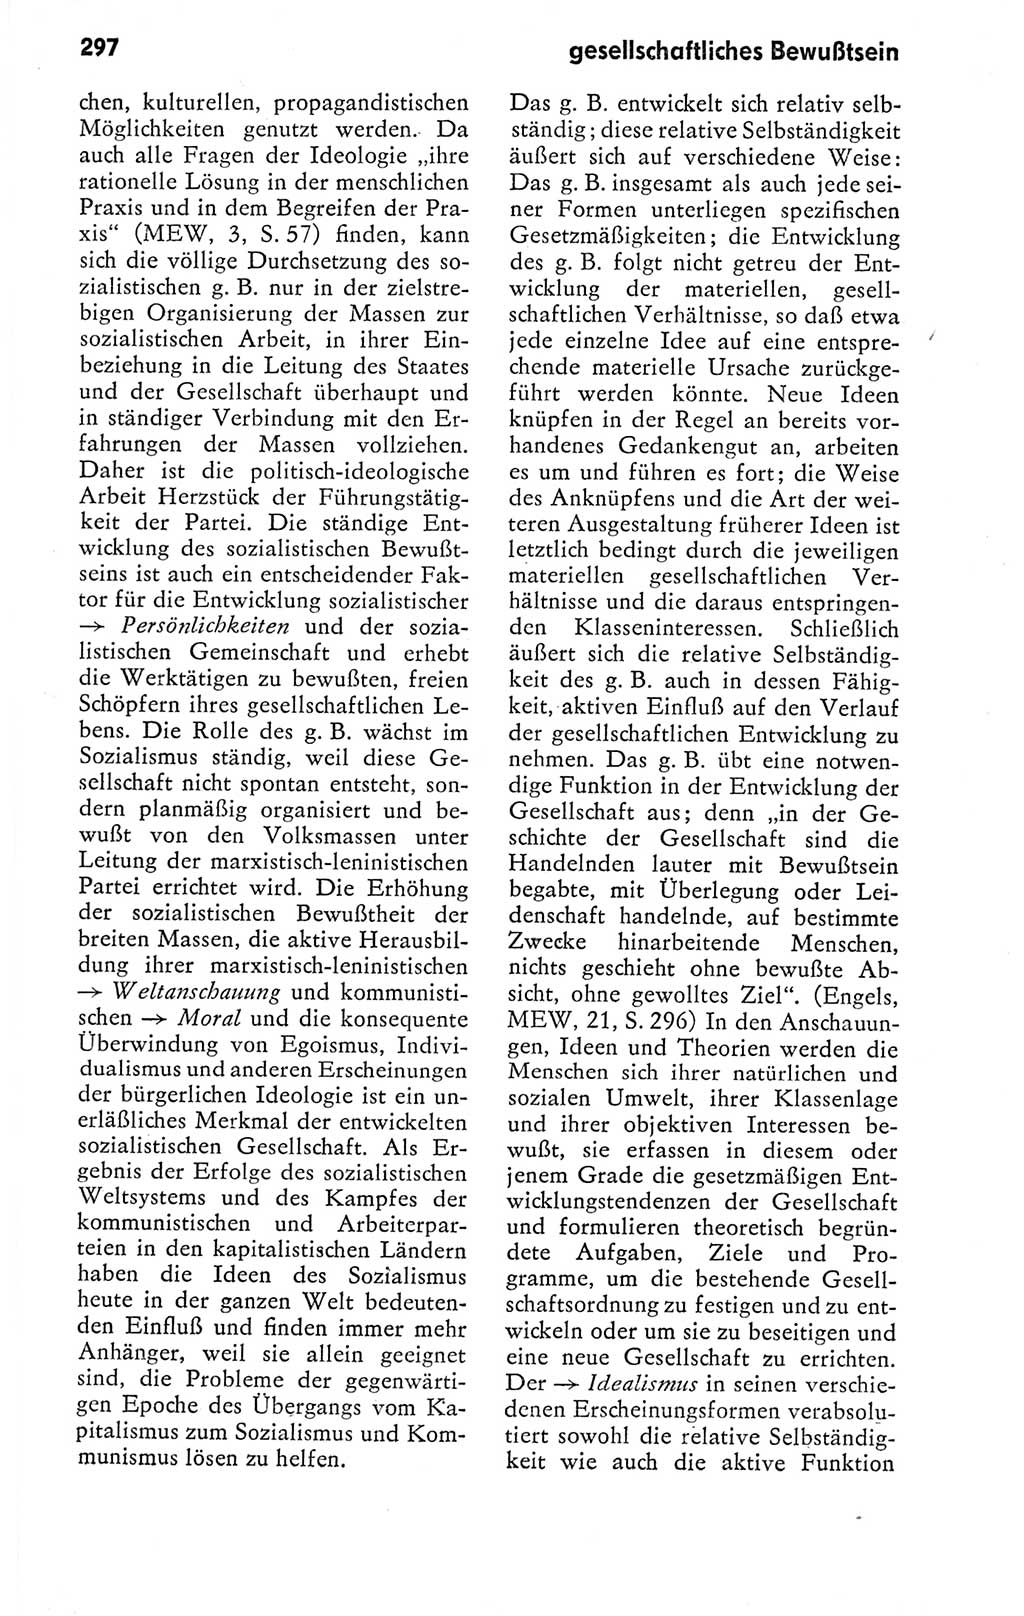 Kleines politisches Wörterbuch [Deutsche Demokratische Republik (DDR)] 1978, Seite 297 (Kl. pol. Wb. DDR 1978, S. 297)